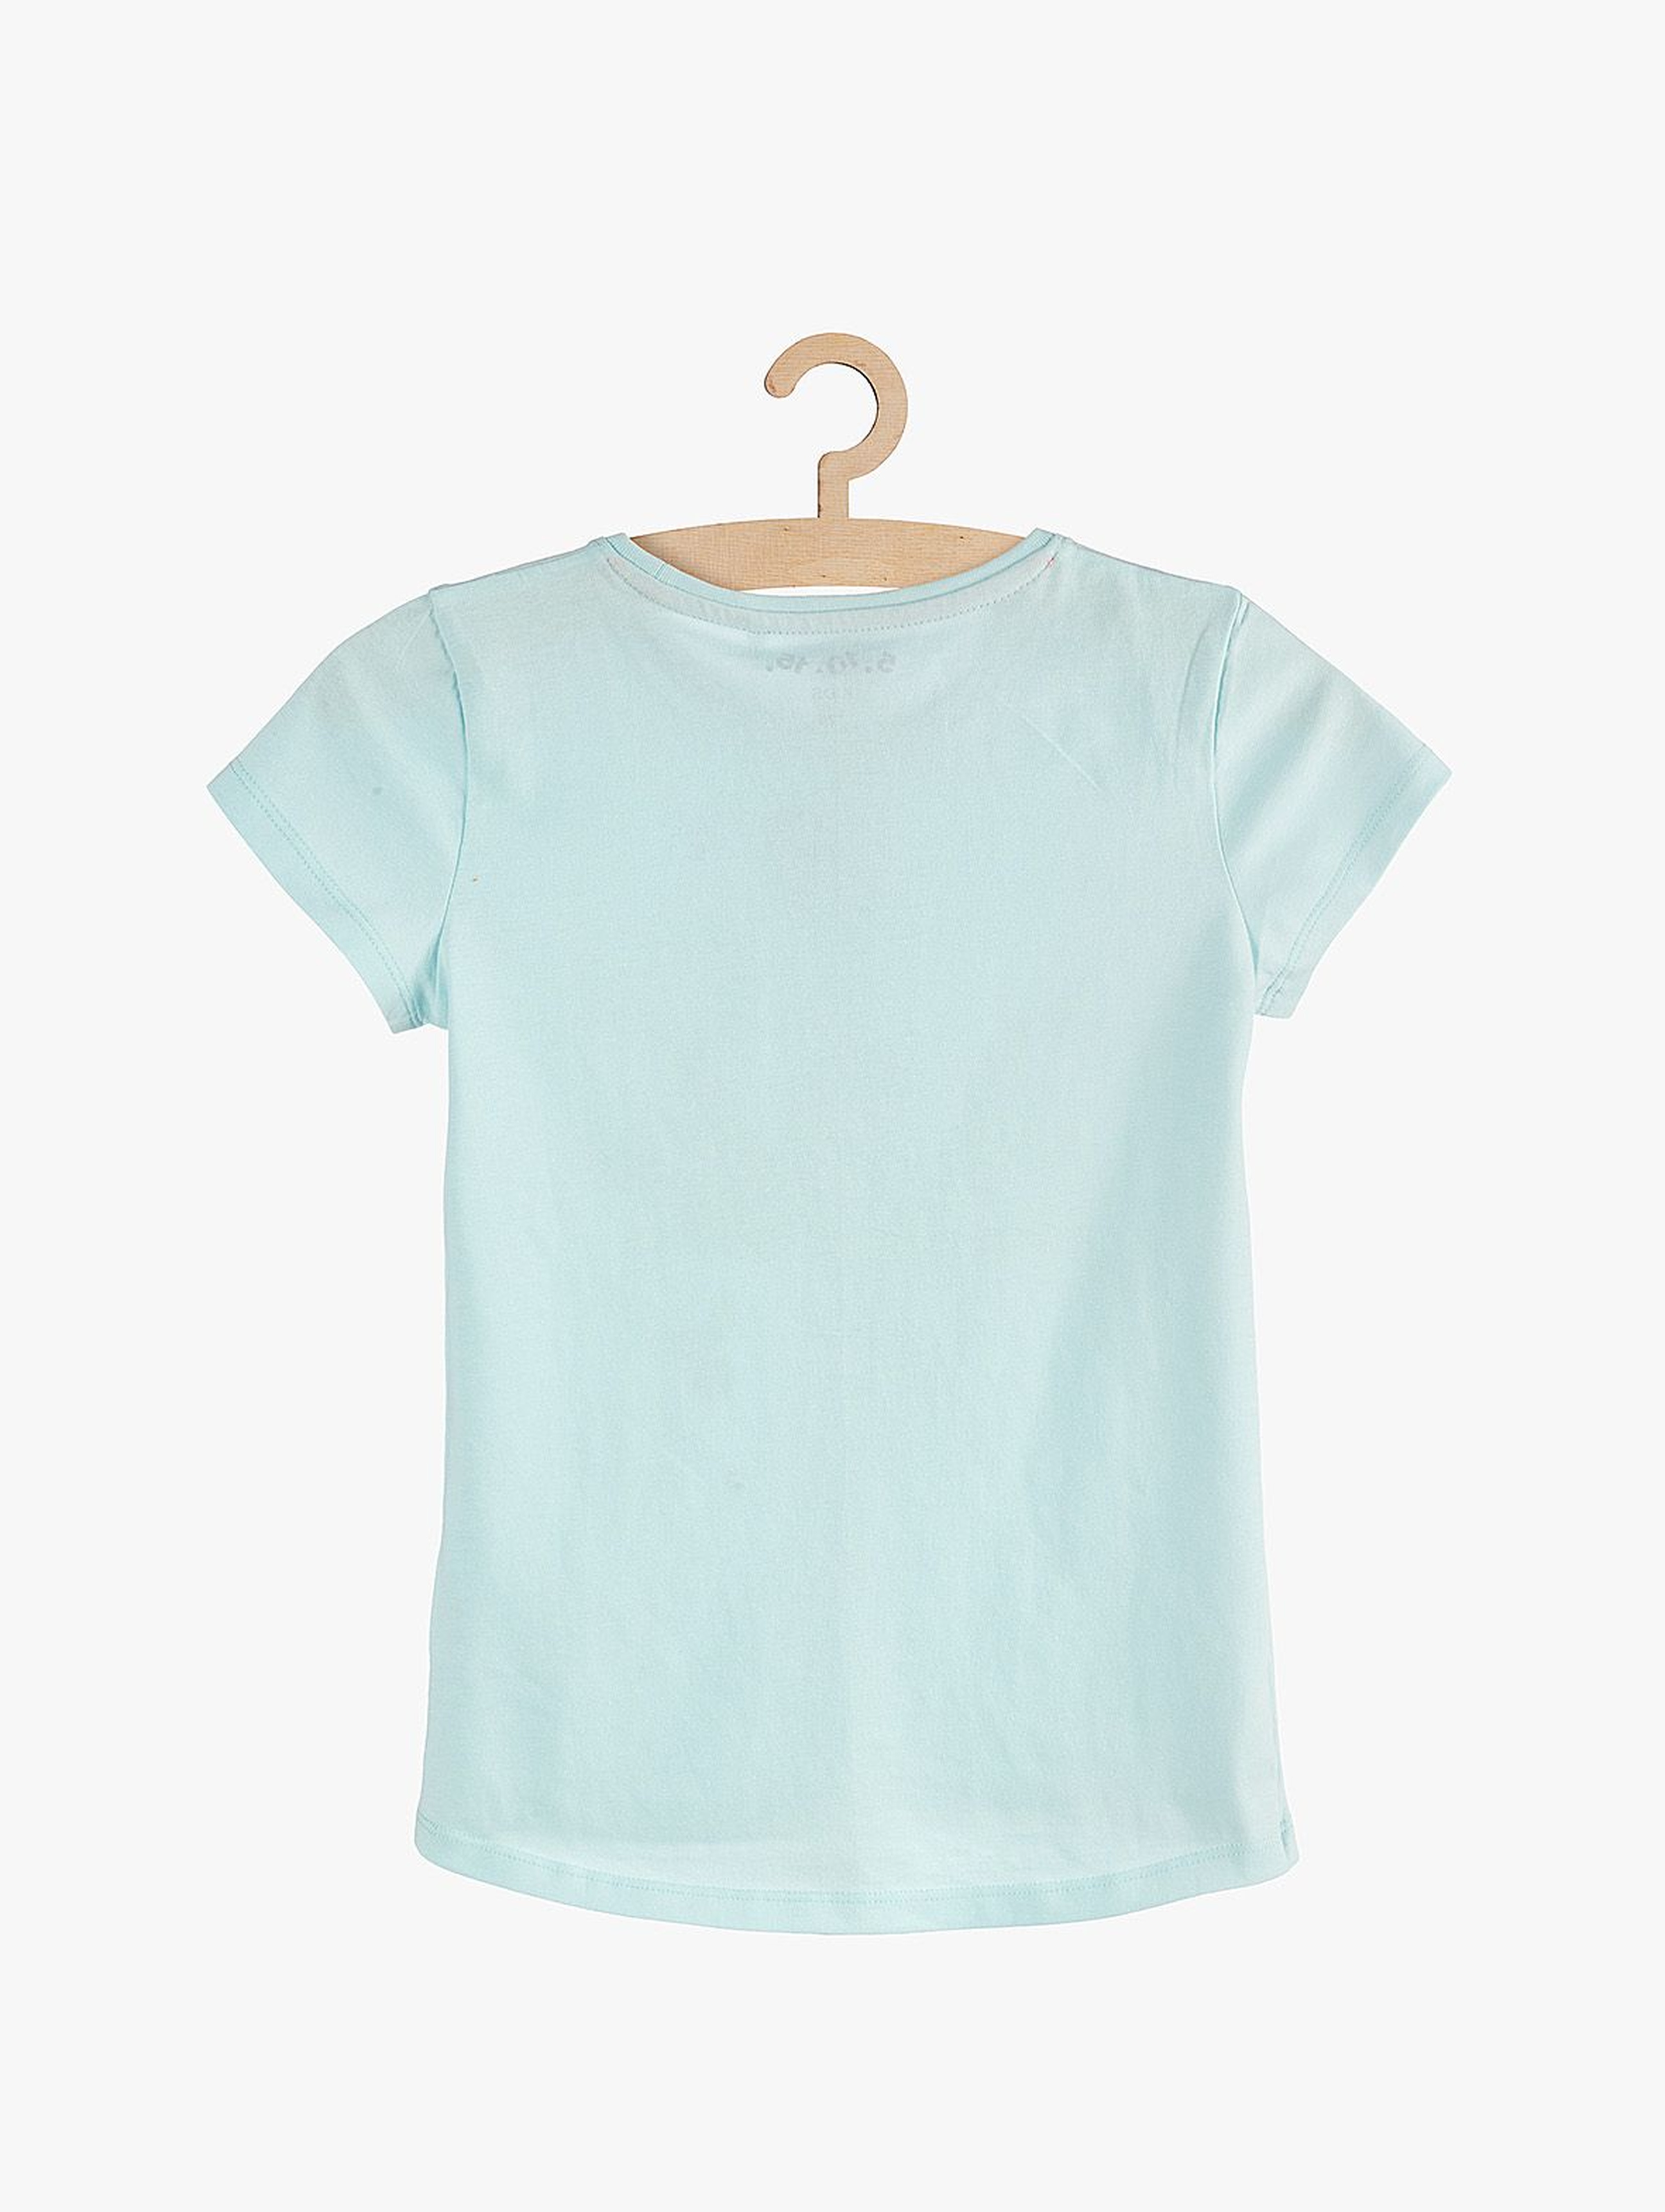 T-shirt dziewczęcy bawełniany niebieski Ośmiornica